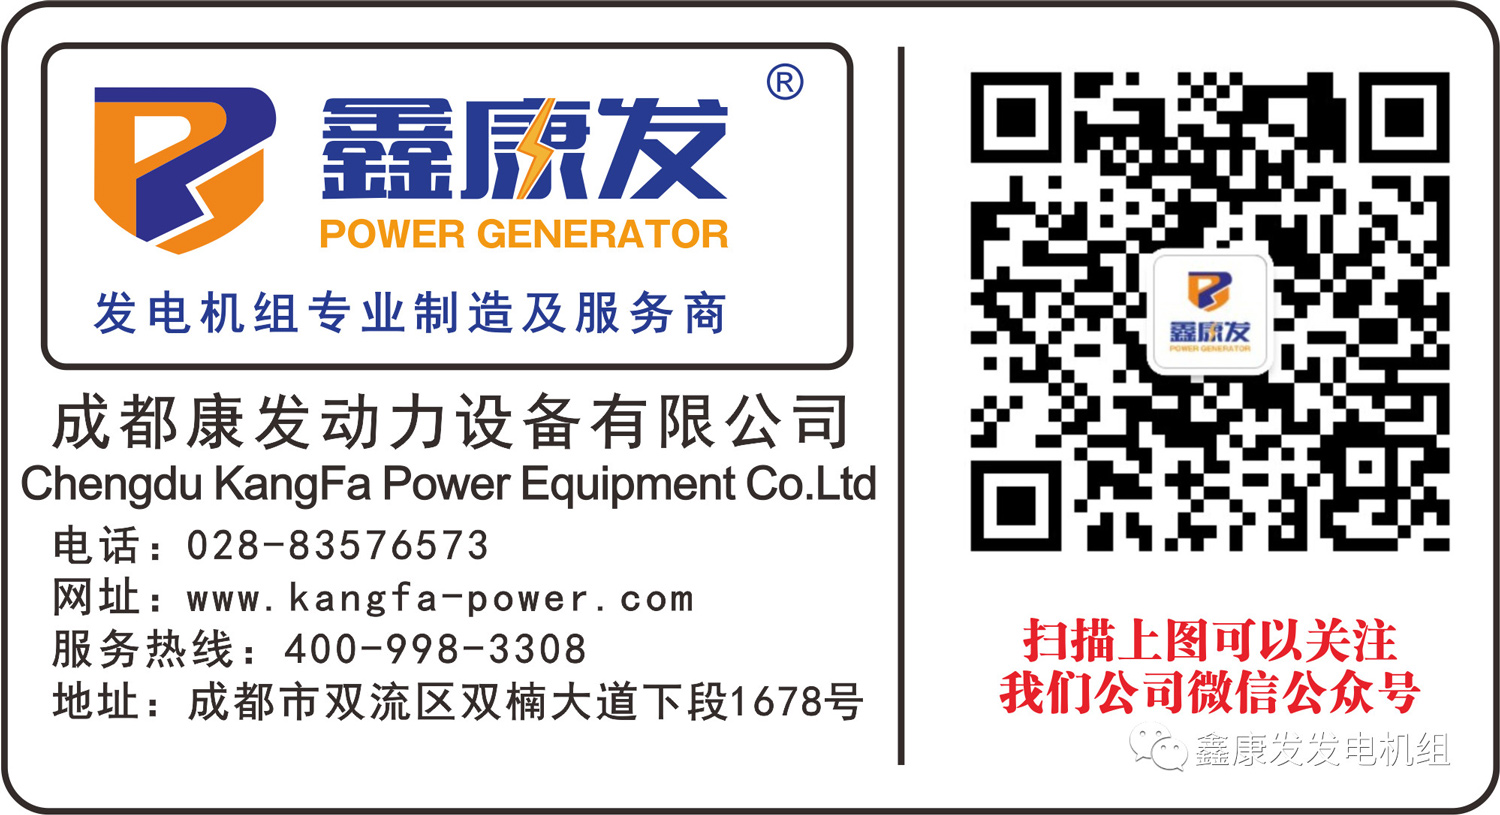 【行业新闻】第五届核电柴油发电机经验交流研讨会在上海召开